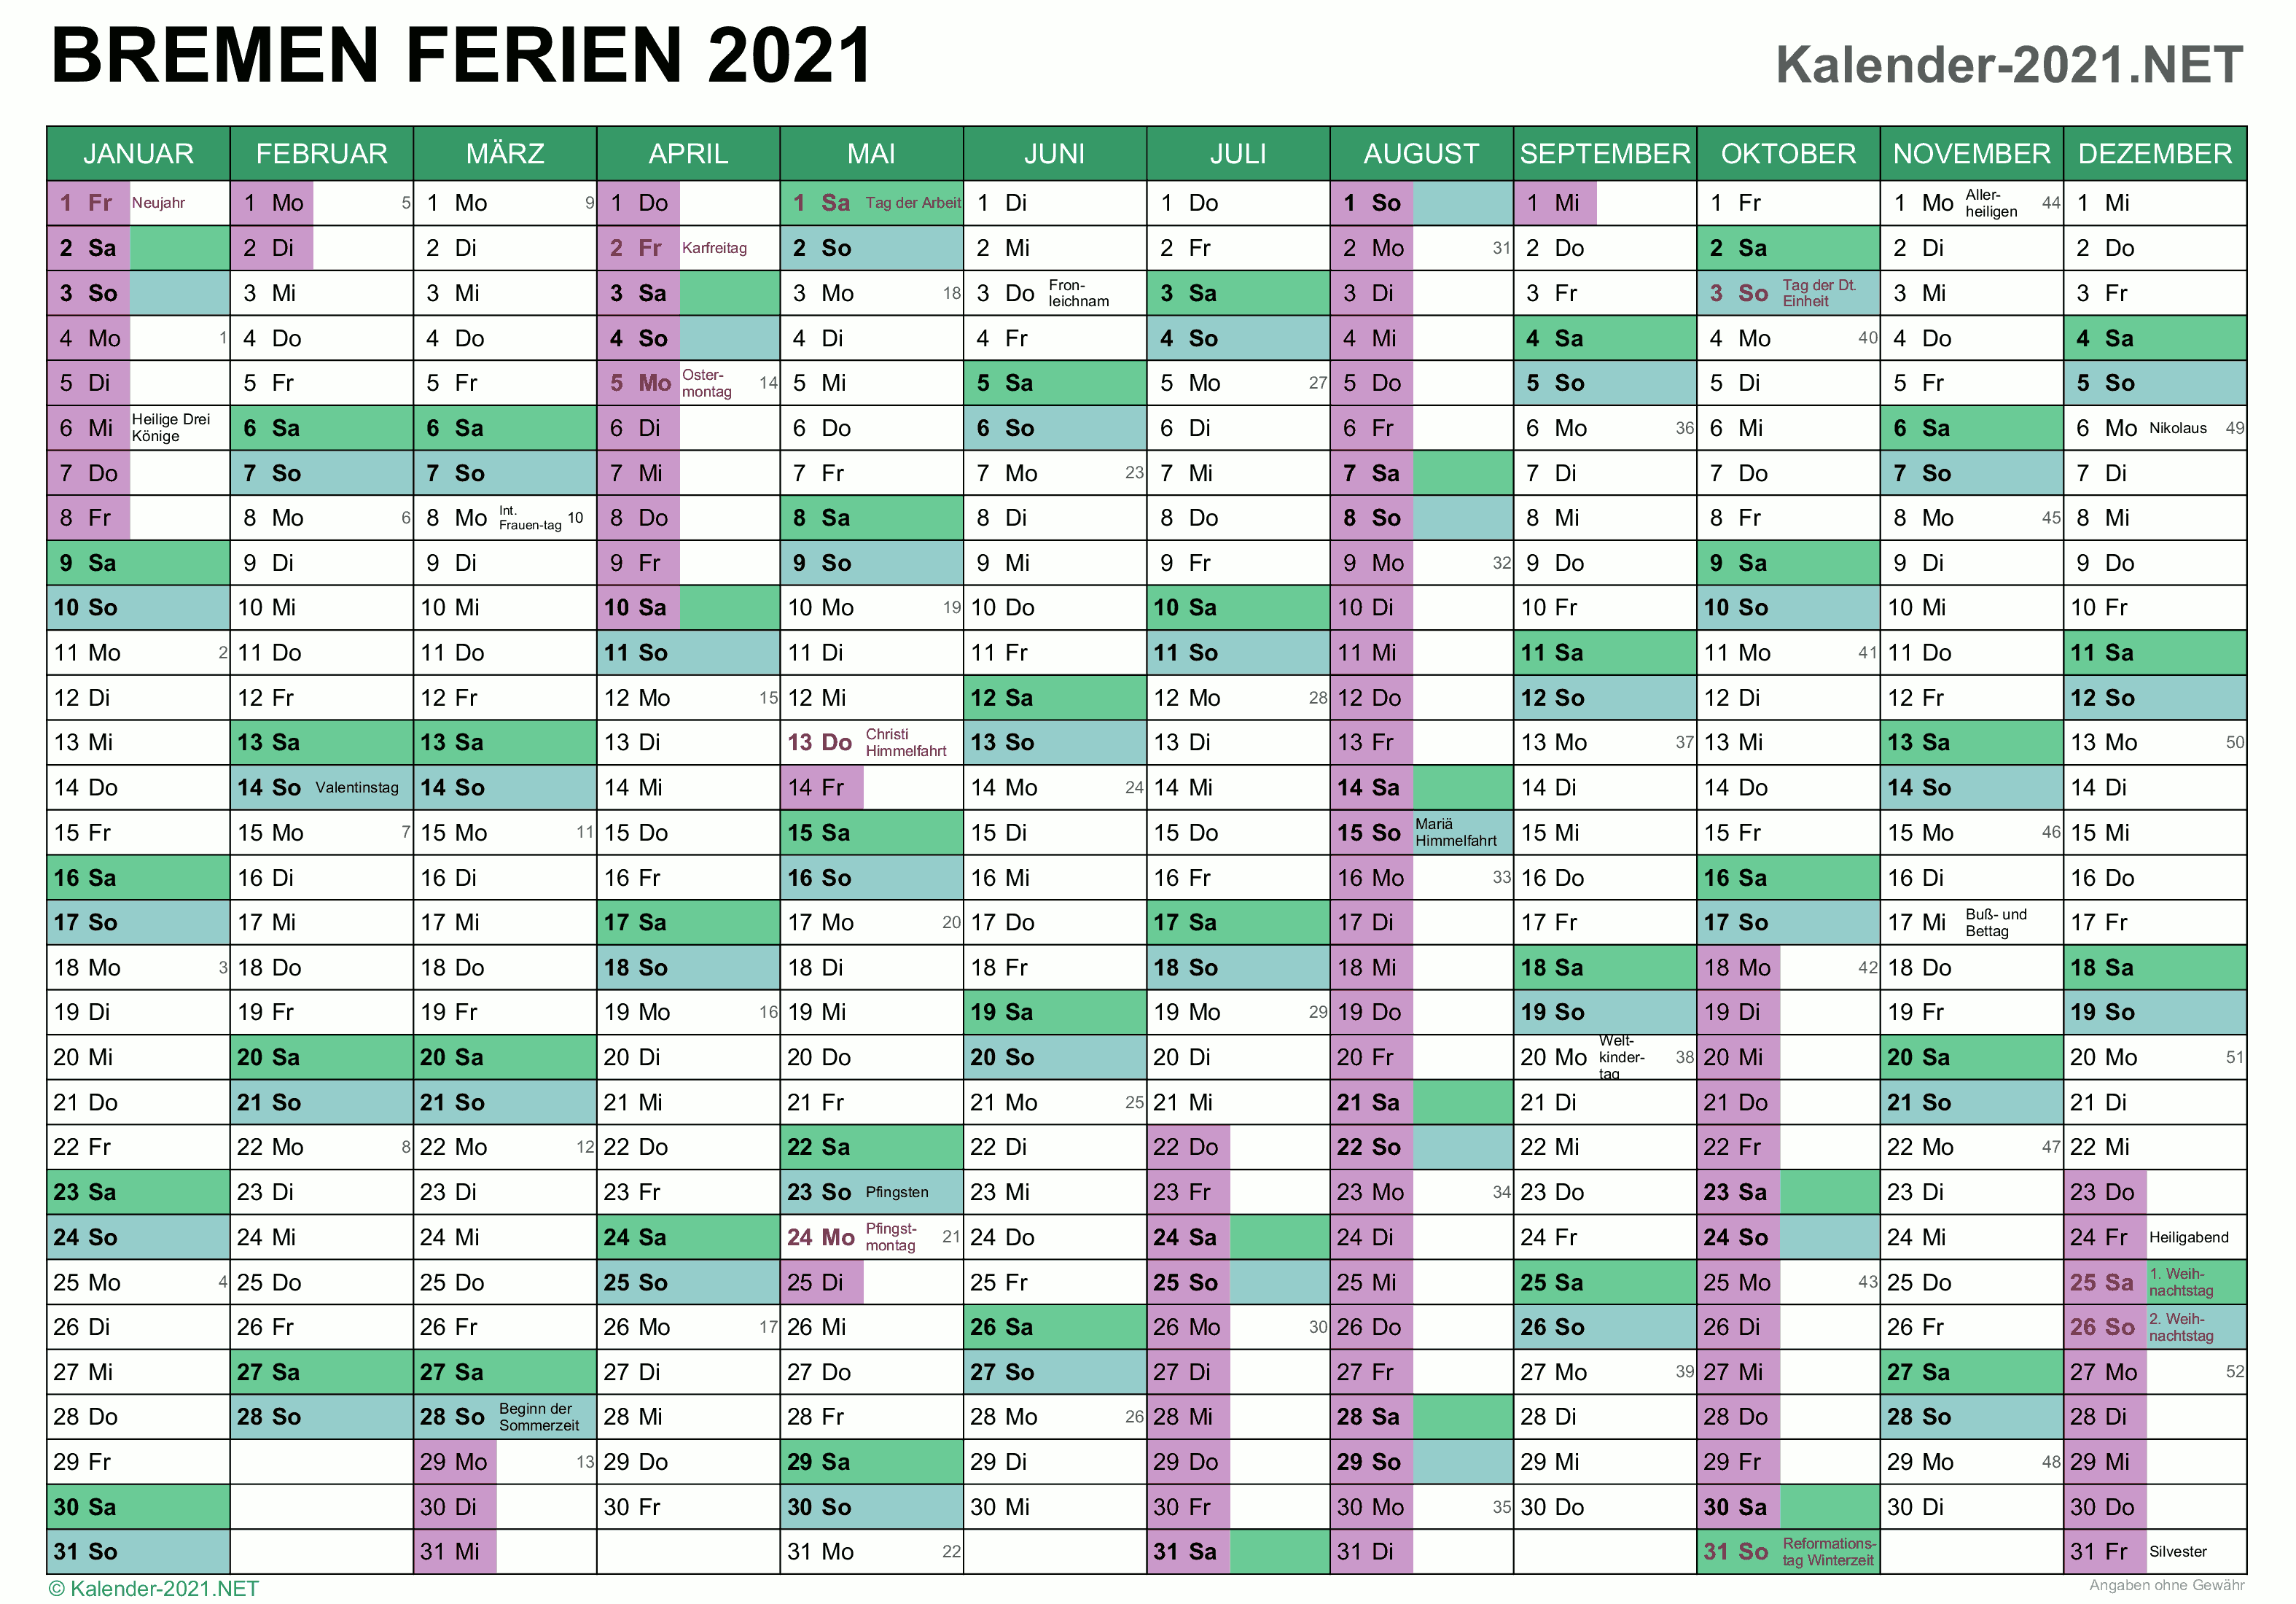 FERIEN Bremen 2021 - Ferienkalender & Übersicht